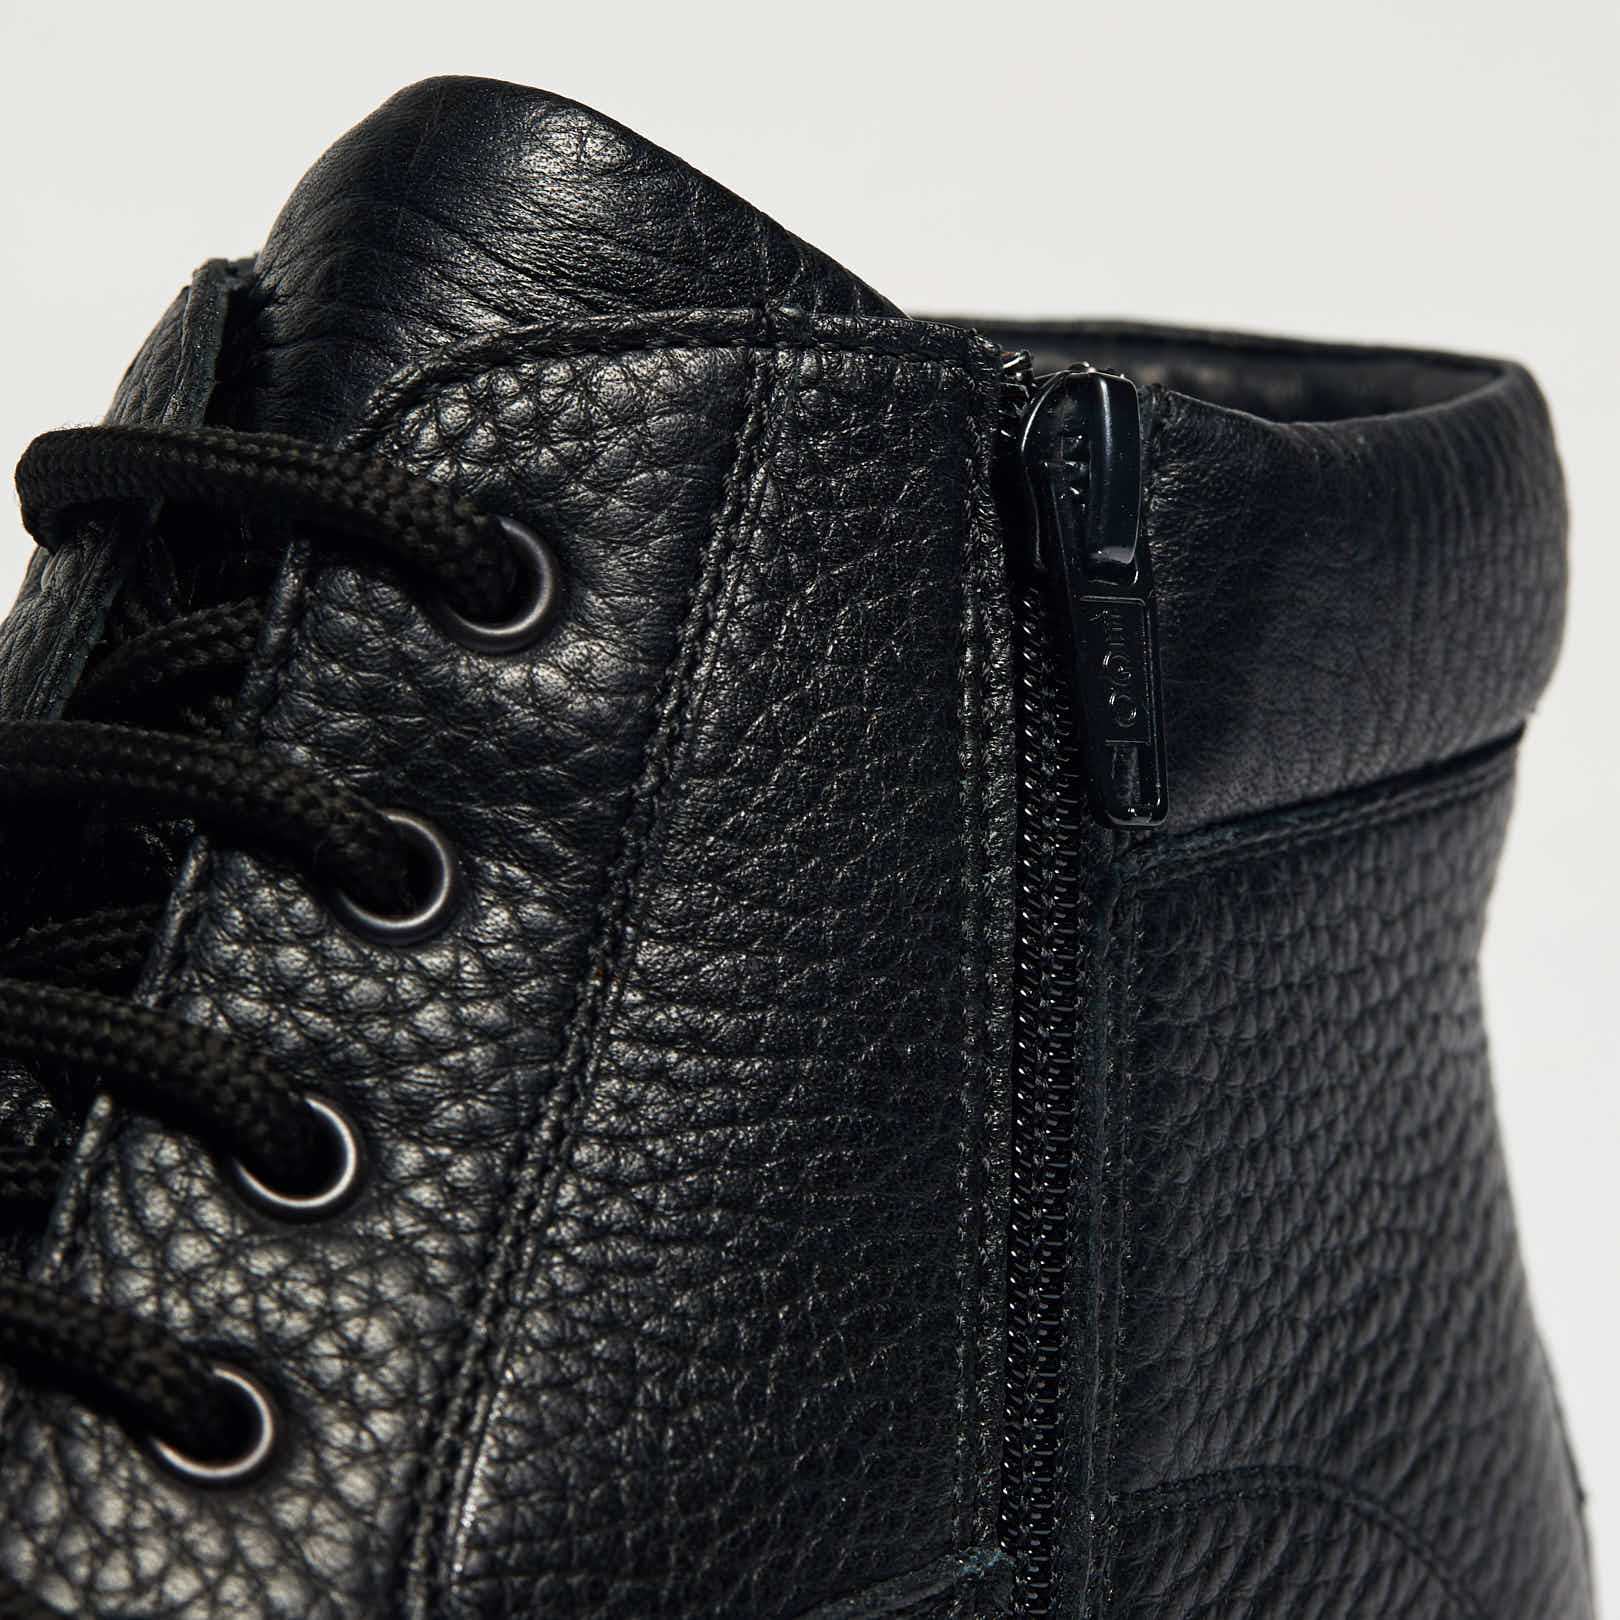 Ботинки мужские RICHARD (цвет черный, натуральная кожа) — купить по цене  3990 р. в интернет-магазине RALF RINGER | Стильная мужская обувь в Москве